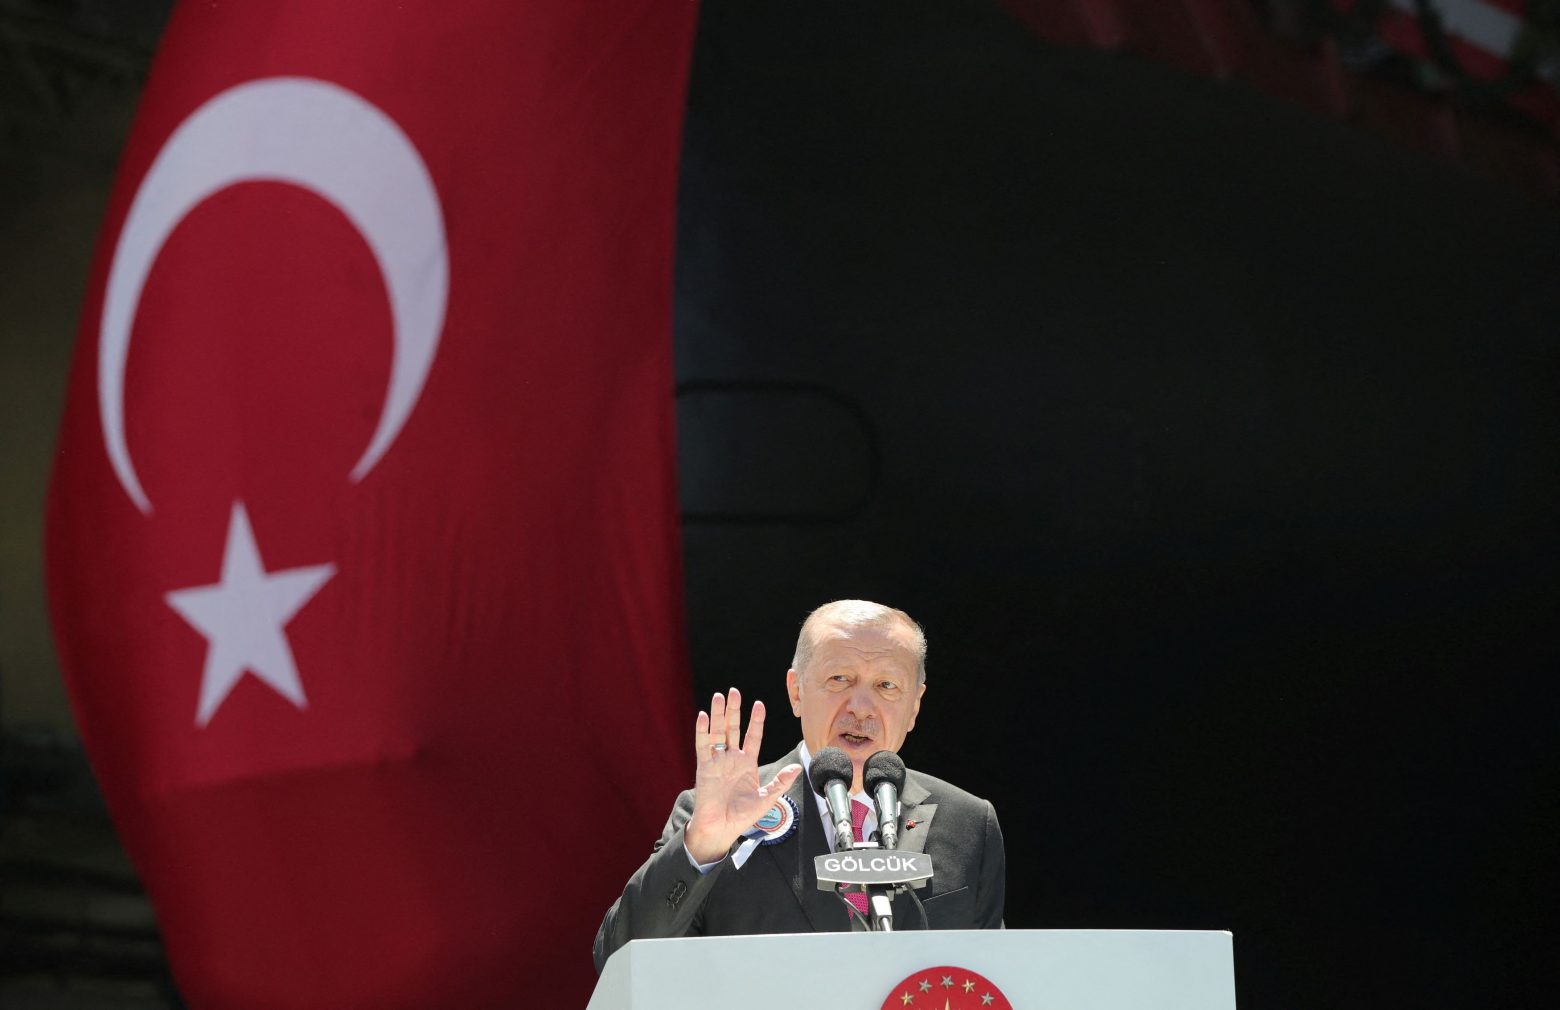 Ερντογάν: Γιατί επιλέγει να τραβήξει τώρα το σκοινί; - Η ελεγχόμενη ένταση και οι «κωλοτούμπες» του Σουλτάνου